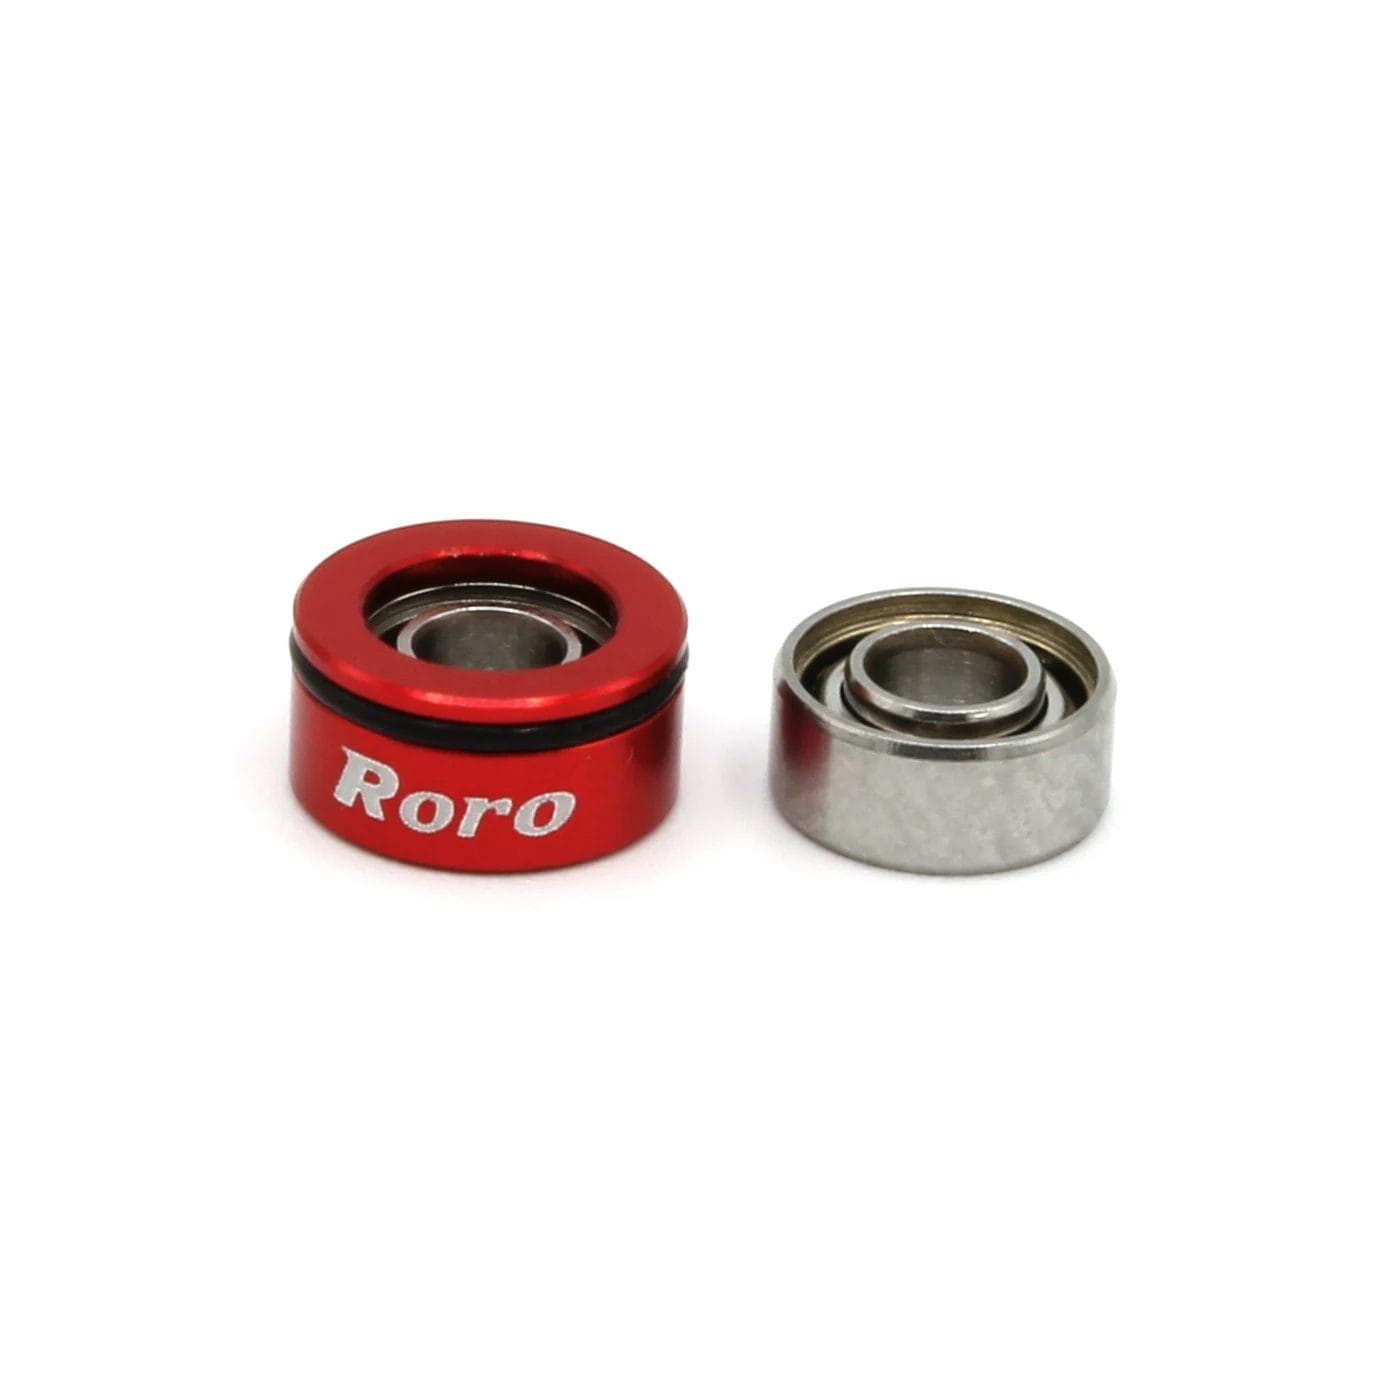 Roro Ceramic Hyrbid Spool Bearing Upgrade Kit for KastKing Kestrel